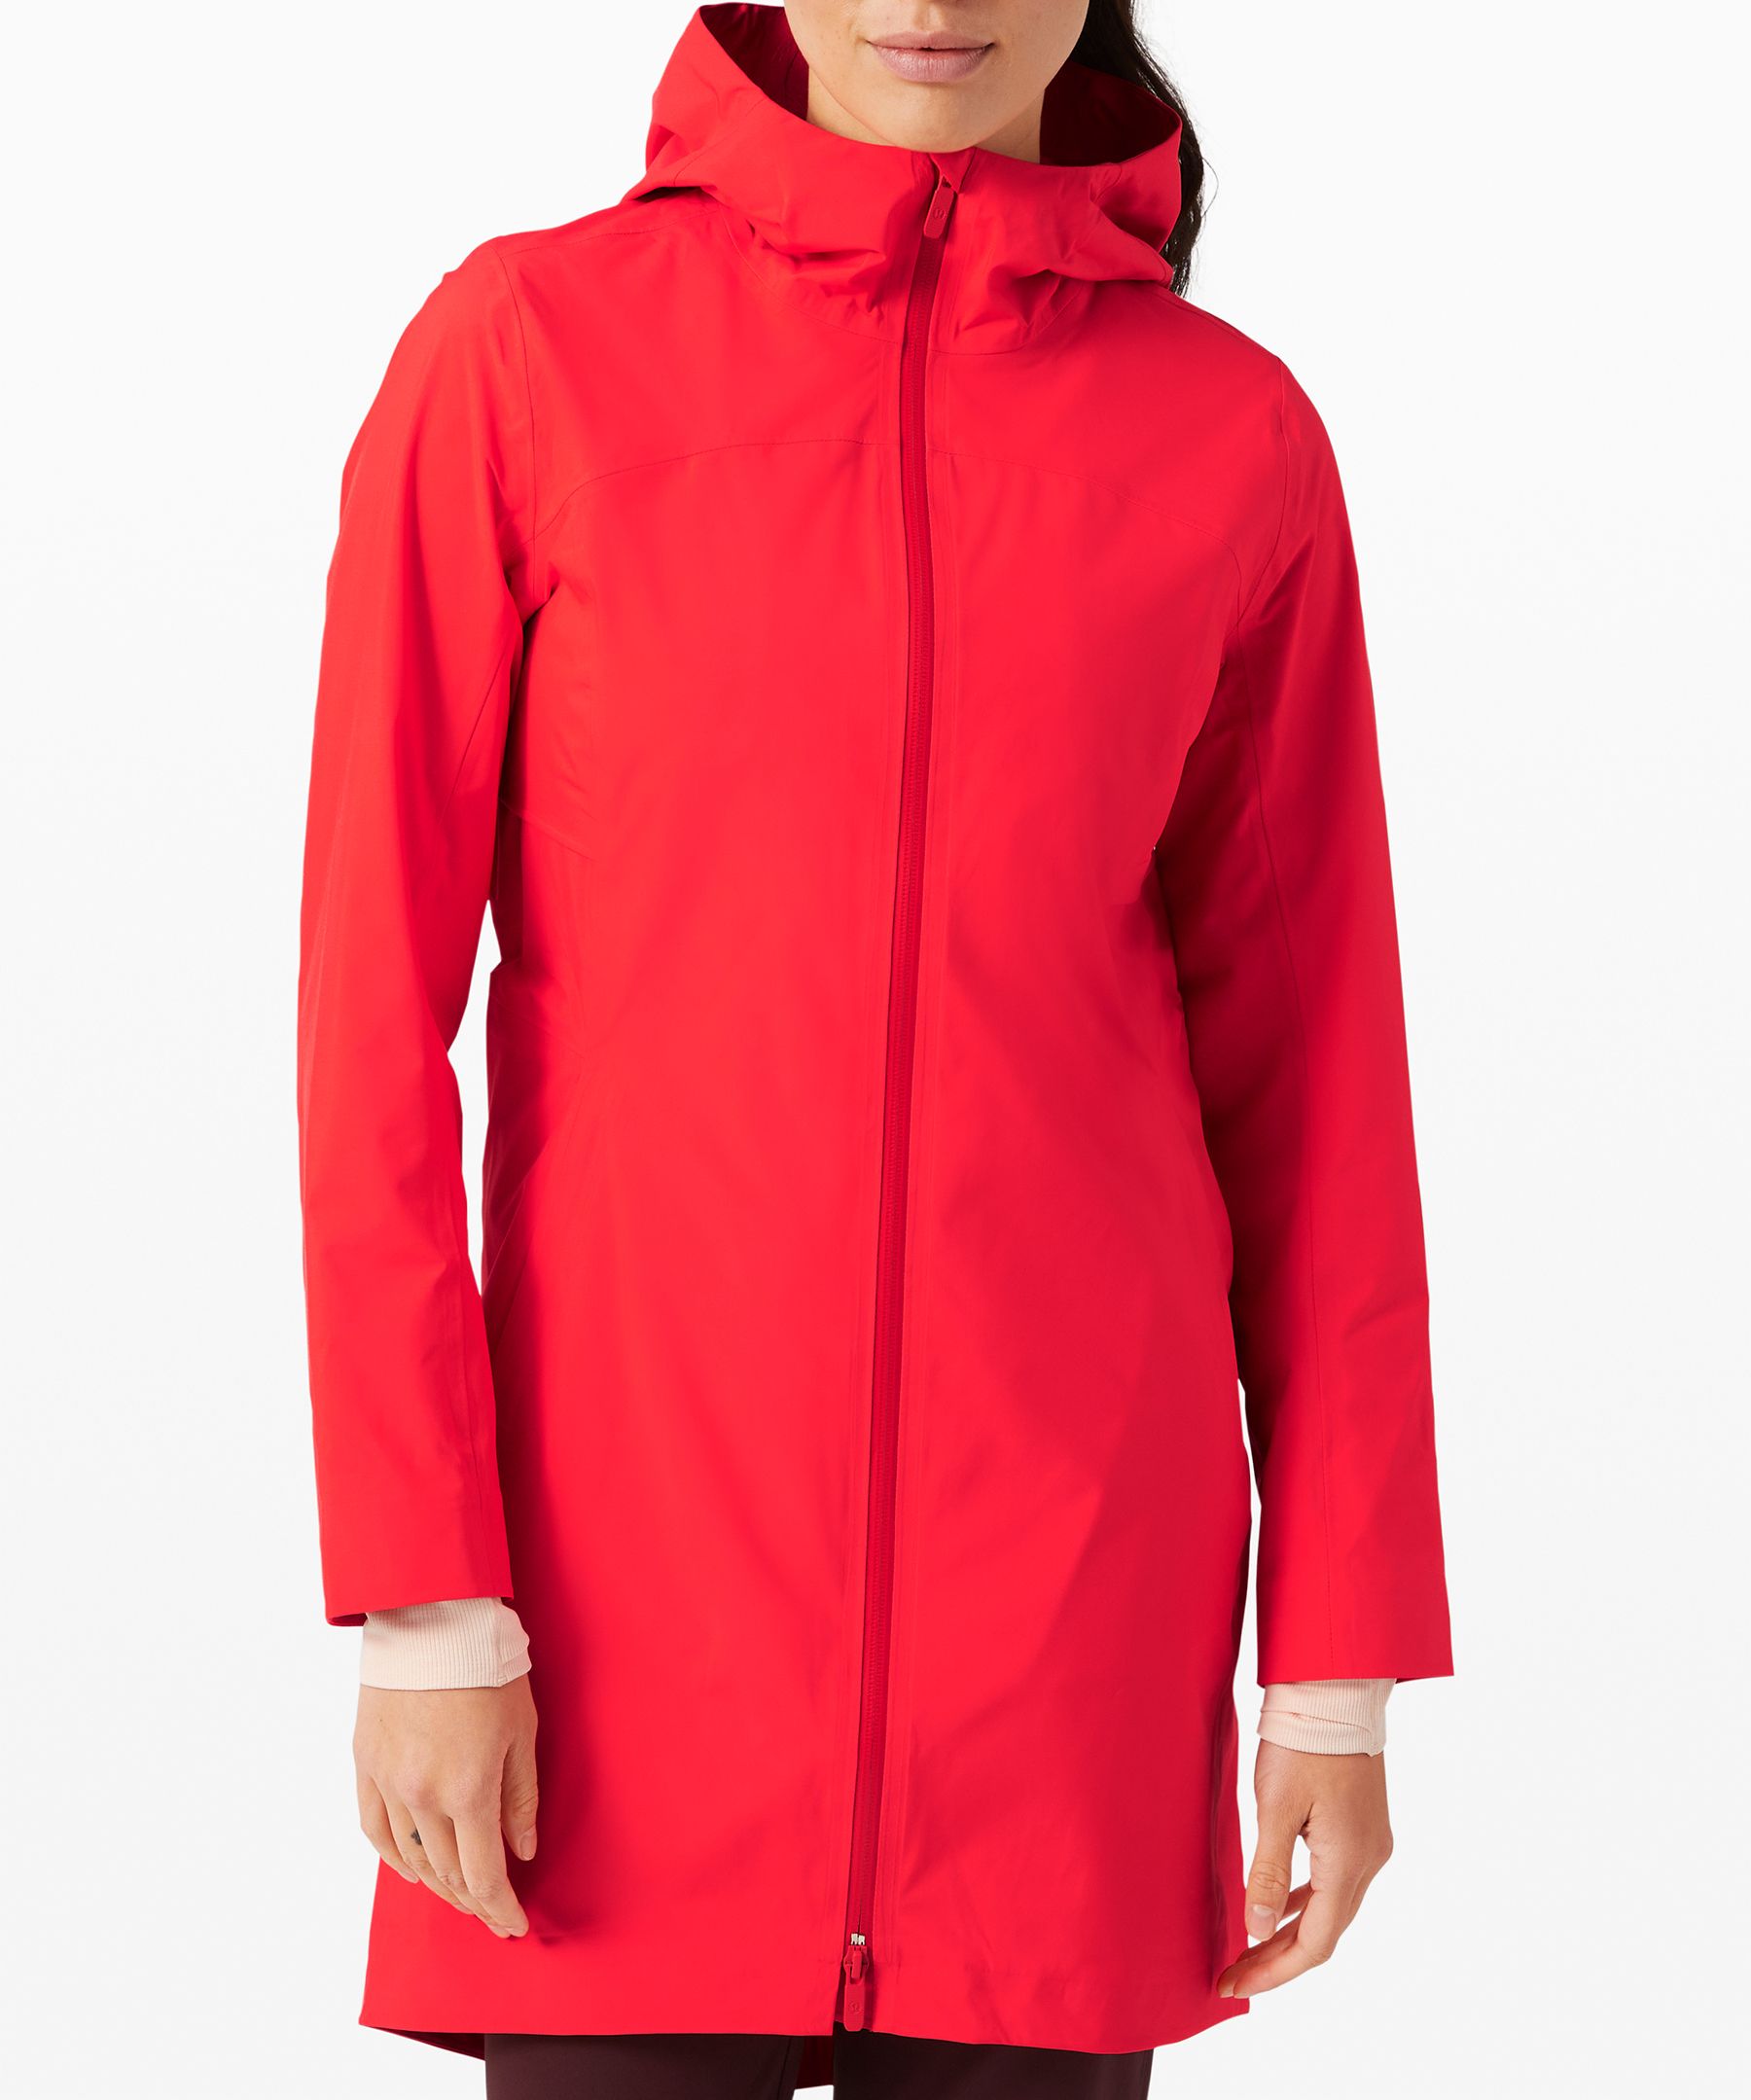 lululemon rebel rain jacket